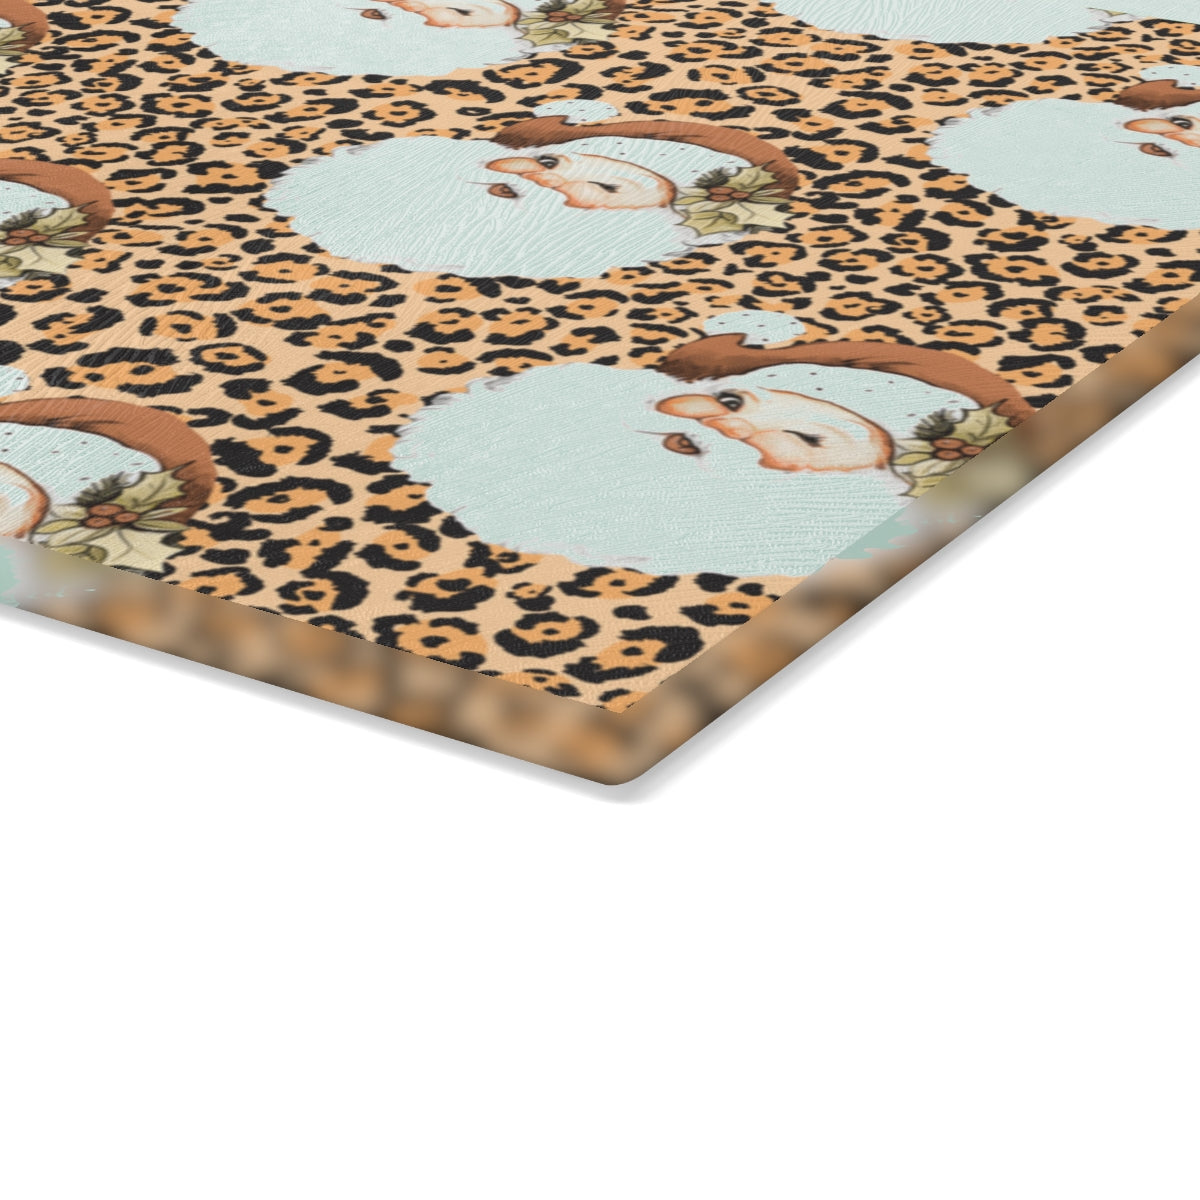 Leopard Santa Christmas Cutting Board